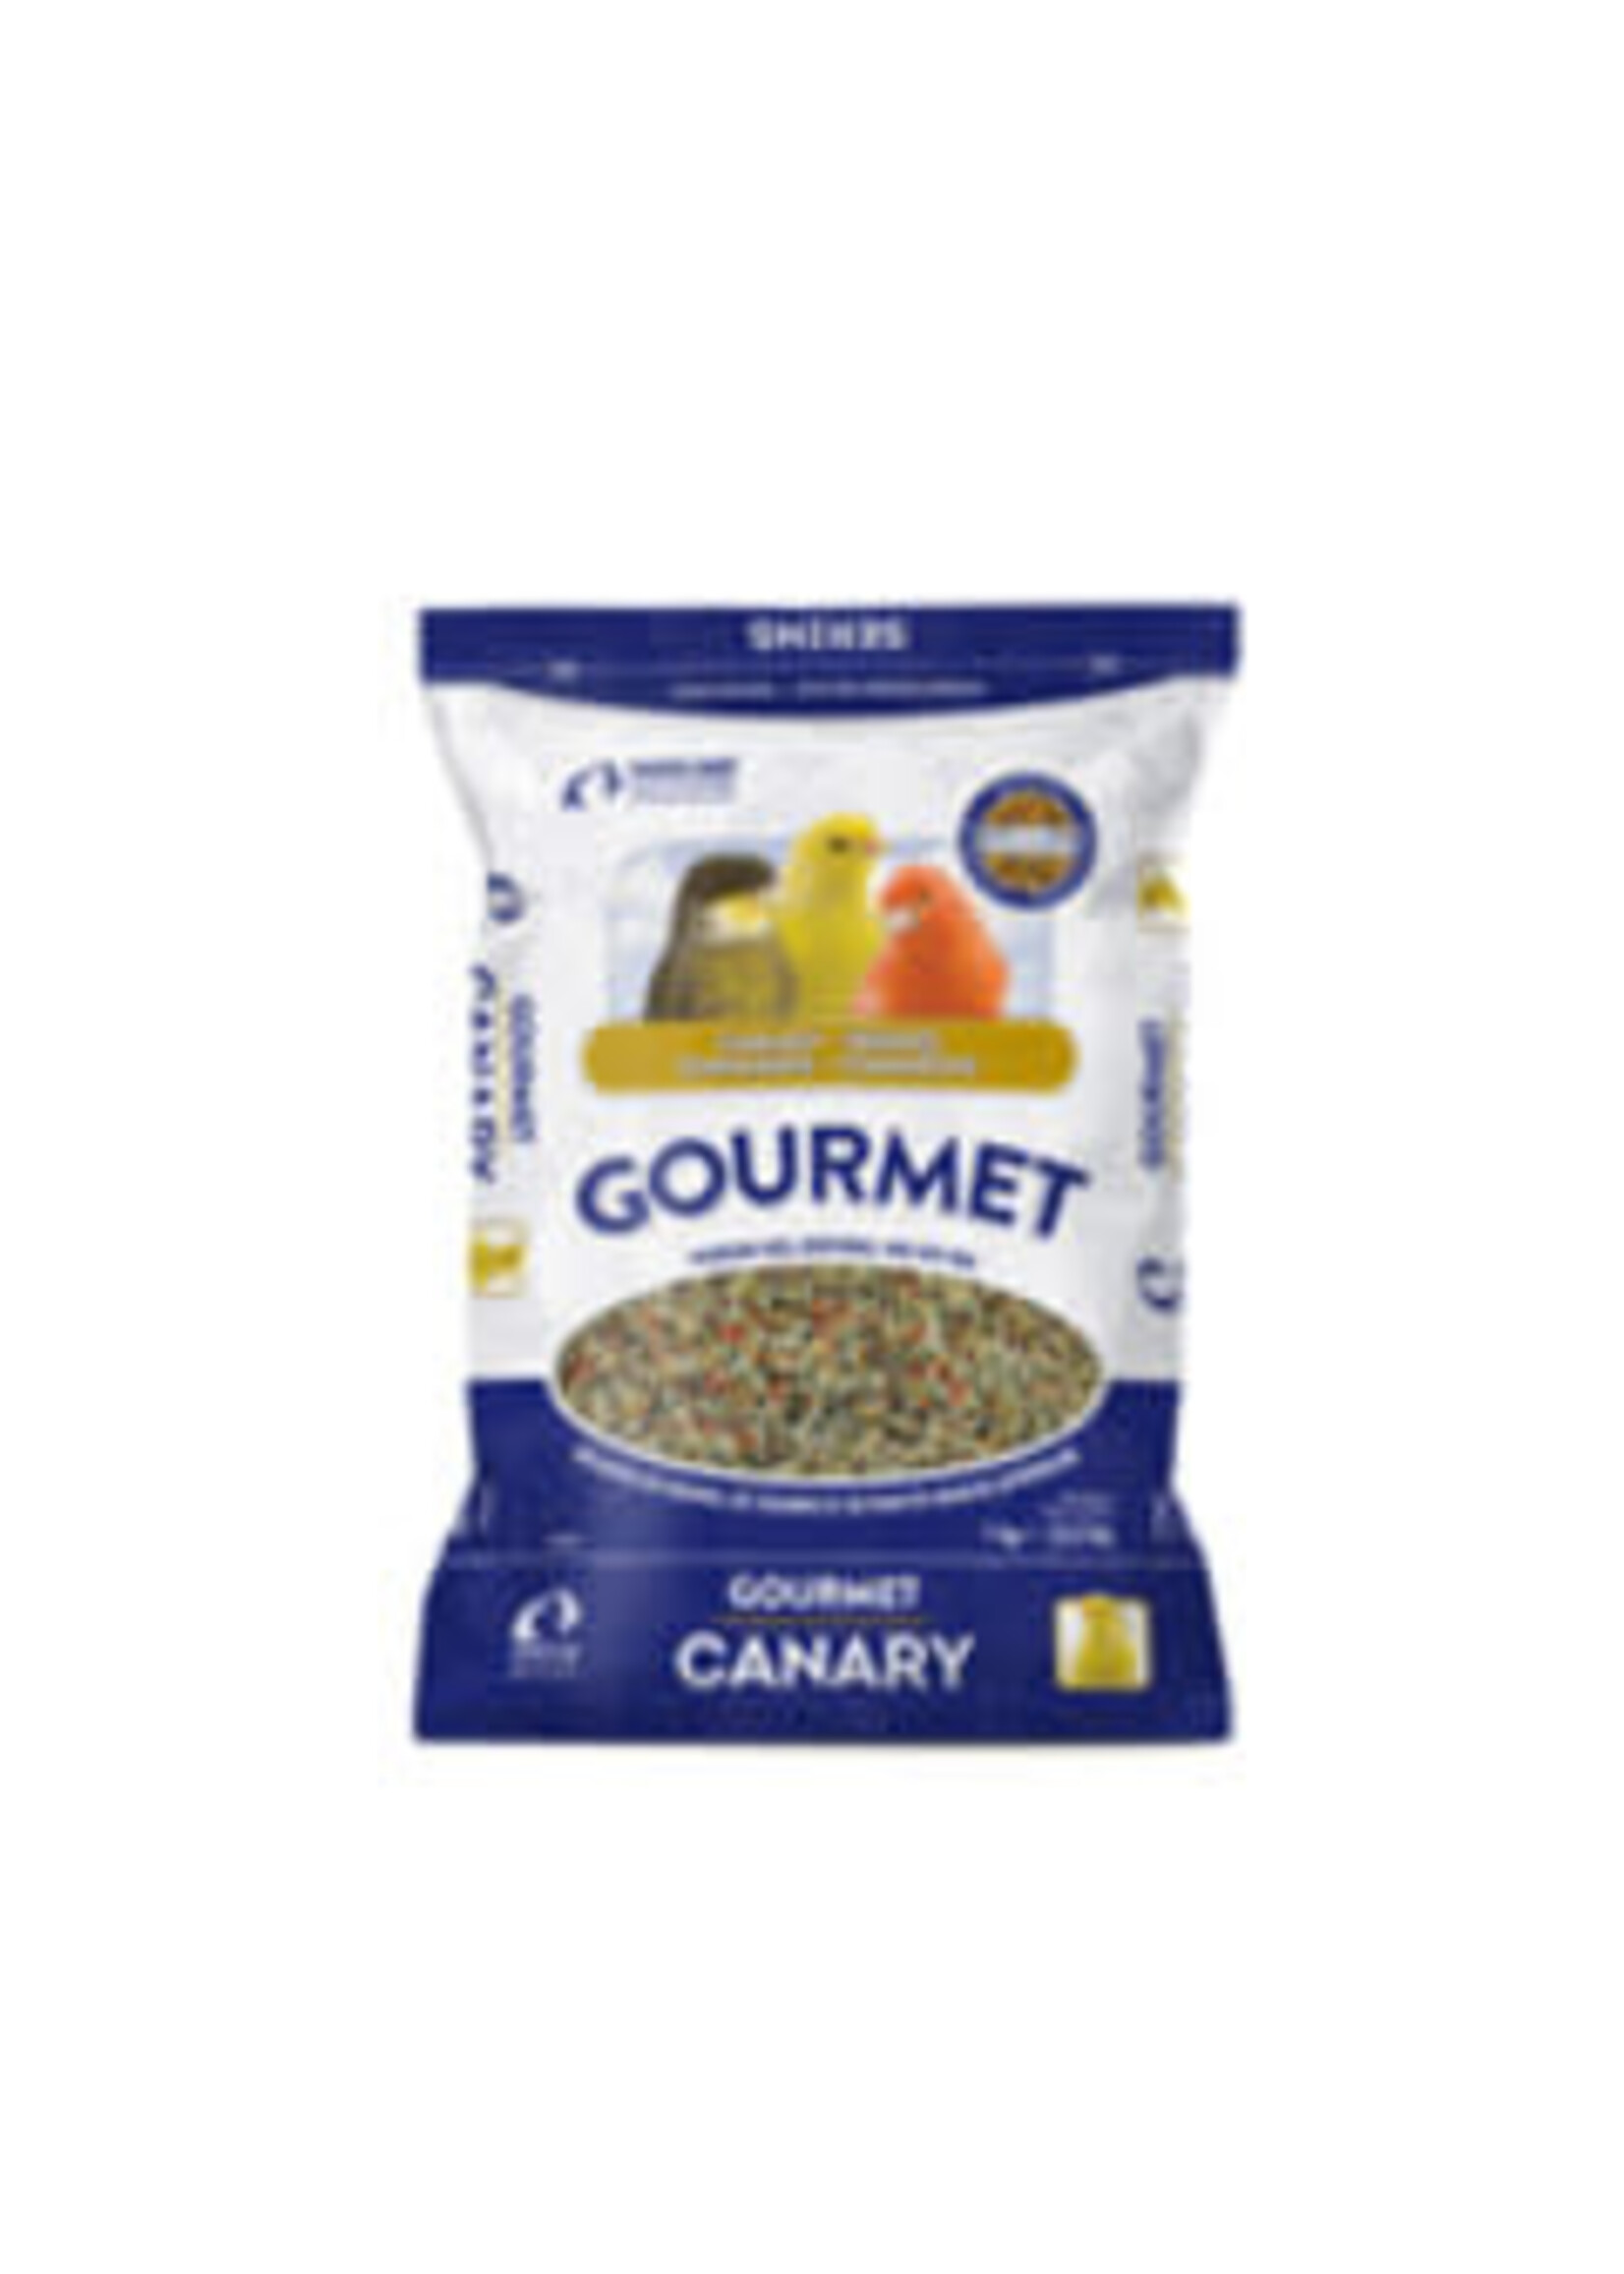 Hari HARI - Gourmet Premium Seed Mix for Canaries - 1 kg (2.2 lb)